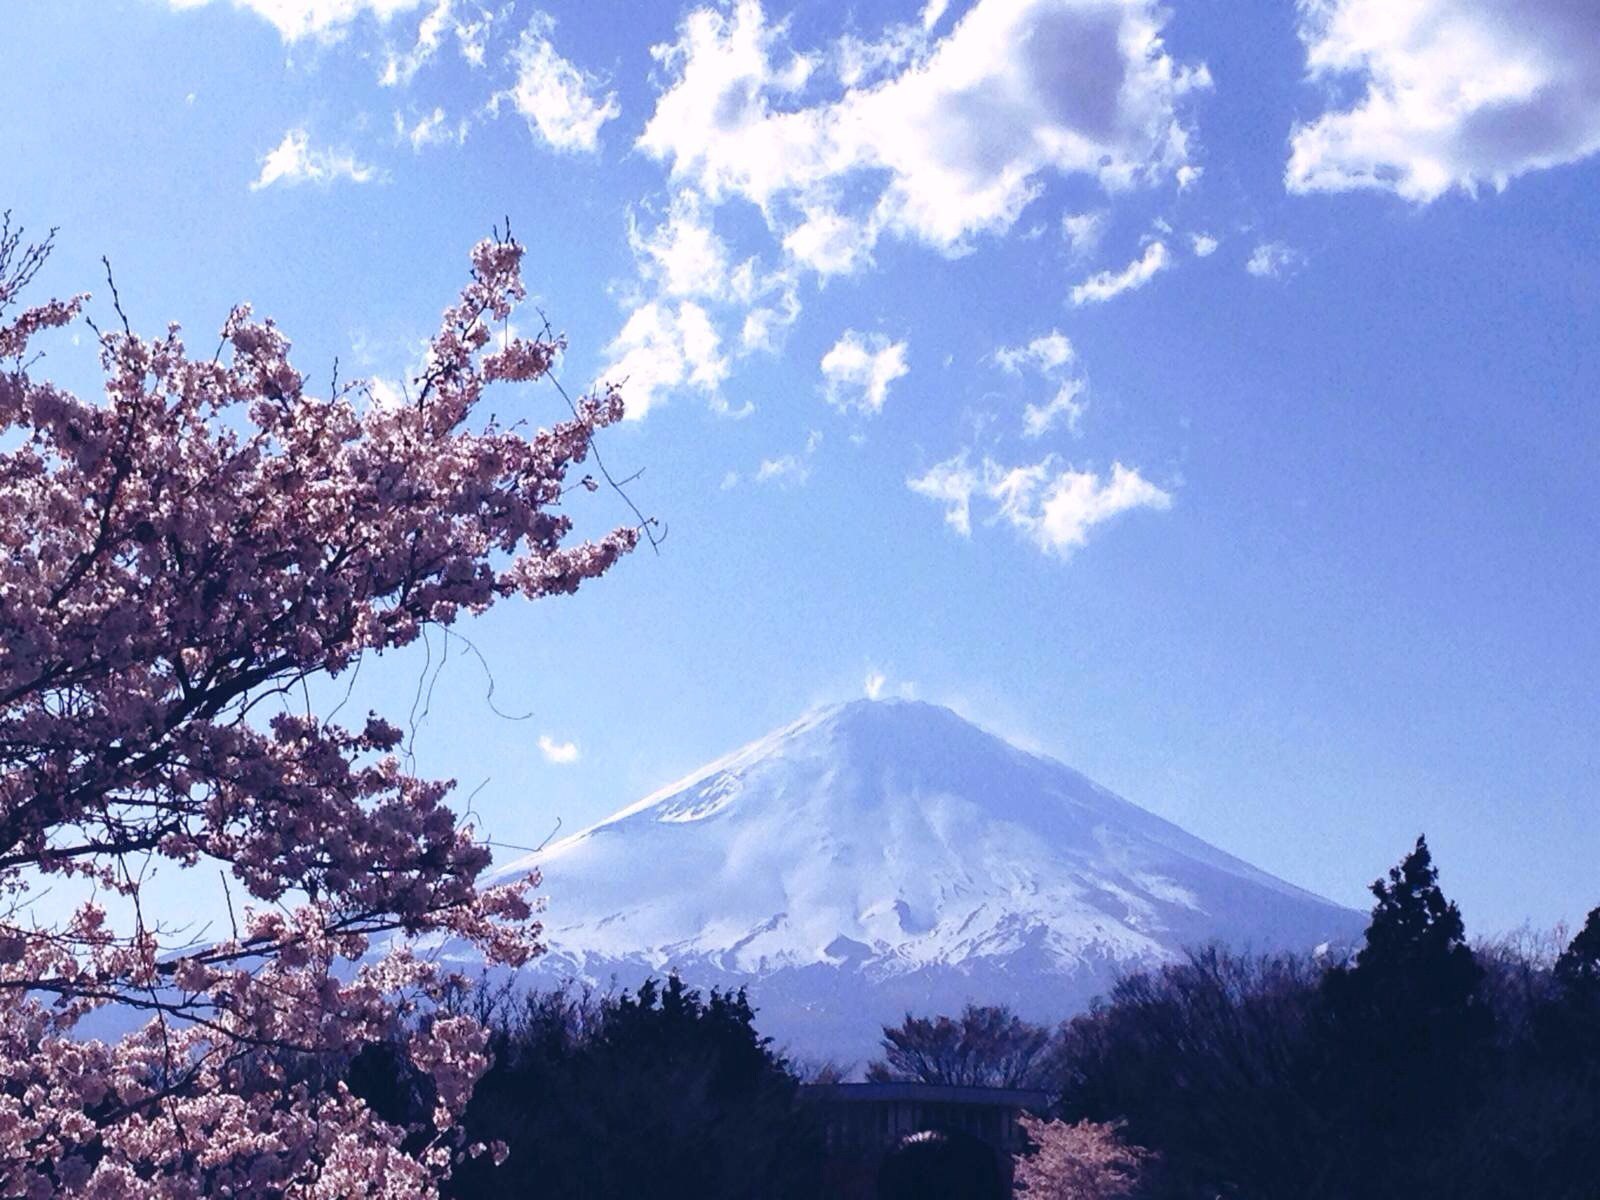 日本富士山风景_素材公社_tooopen.com